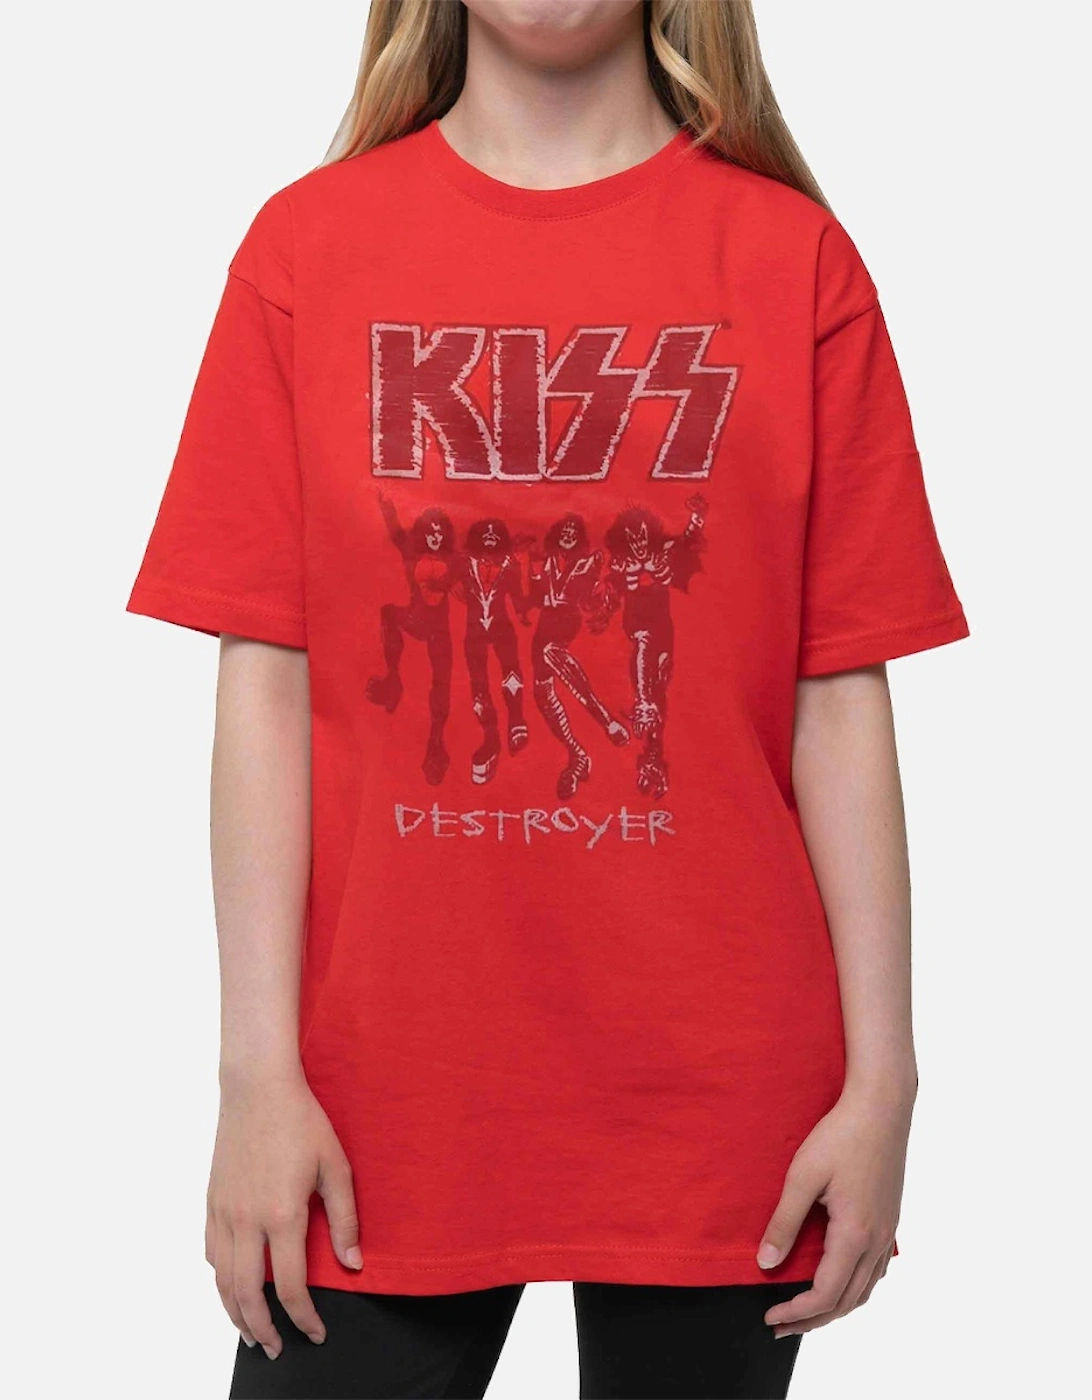 Childrens/Kids Destroyer Sketch Cotton T-Shirt